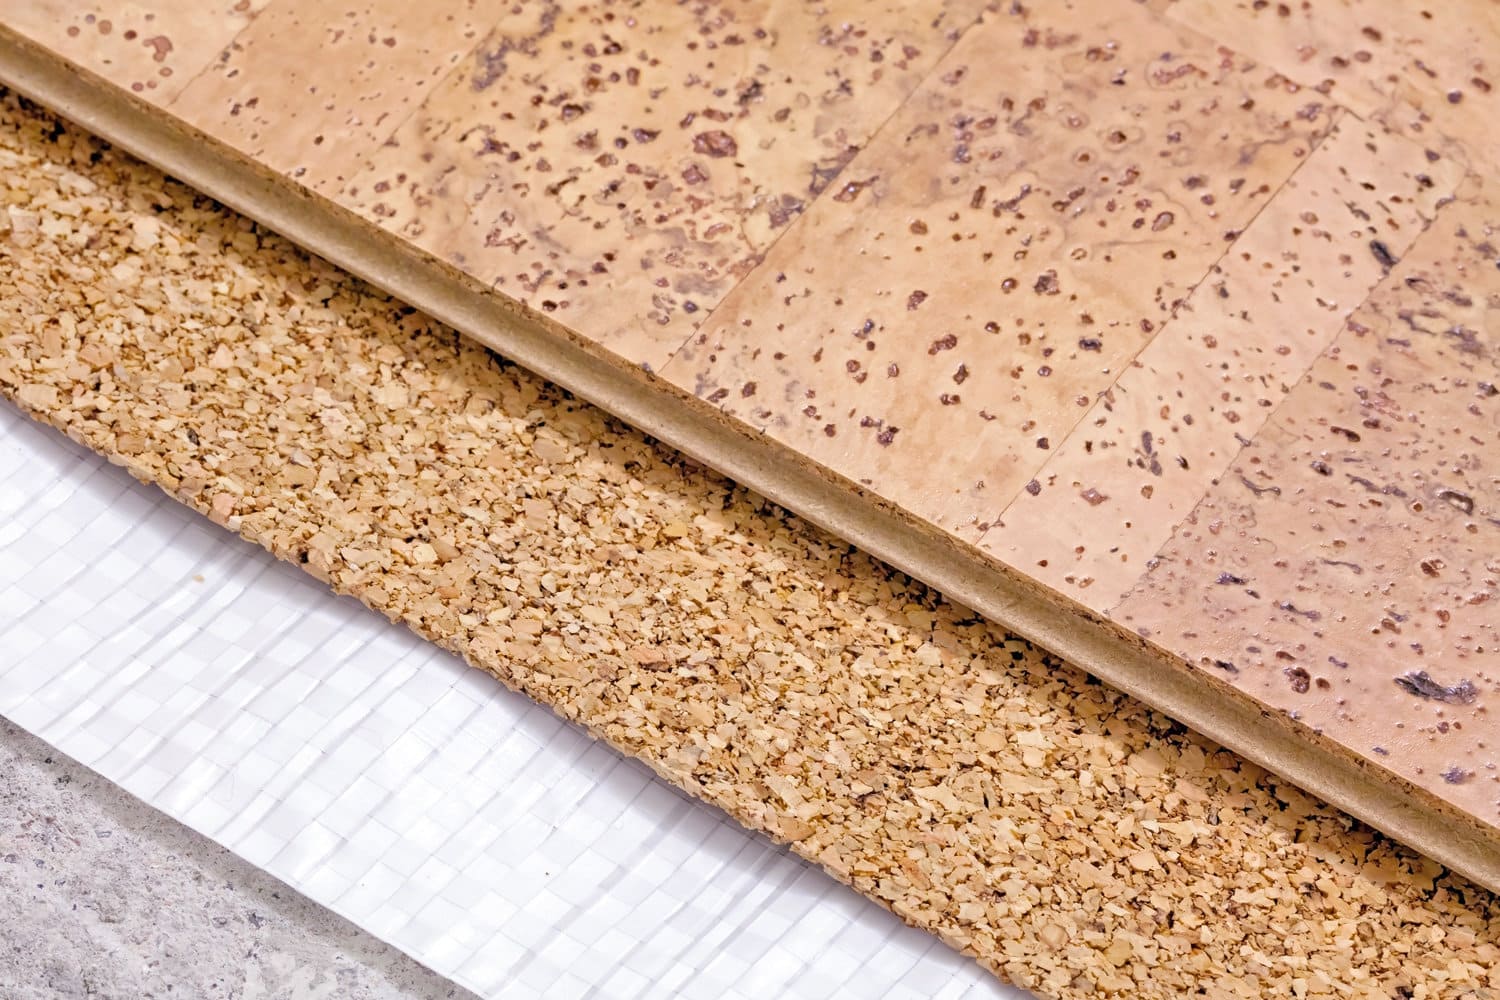 水泥基础上隔热隔音层的软木地板铺设技术